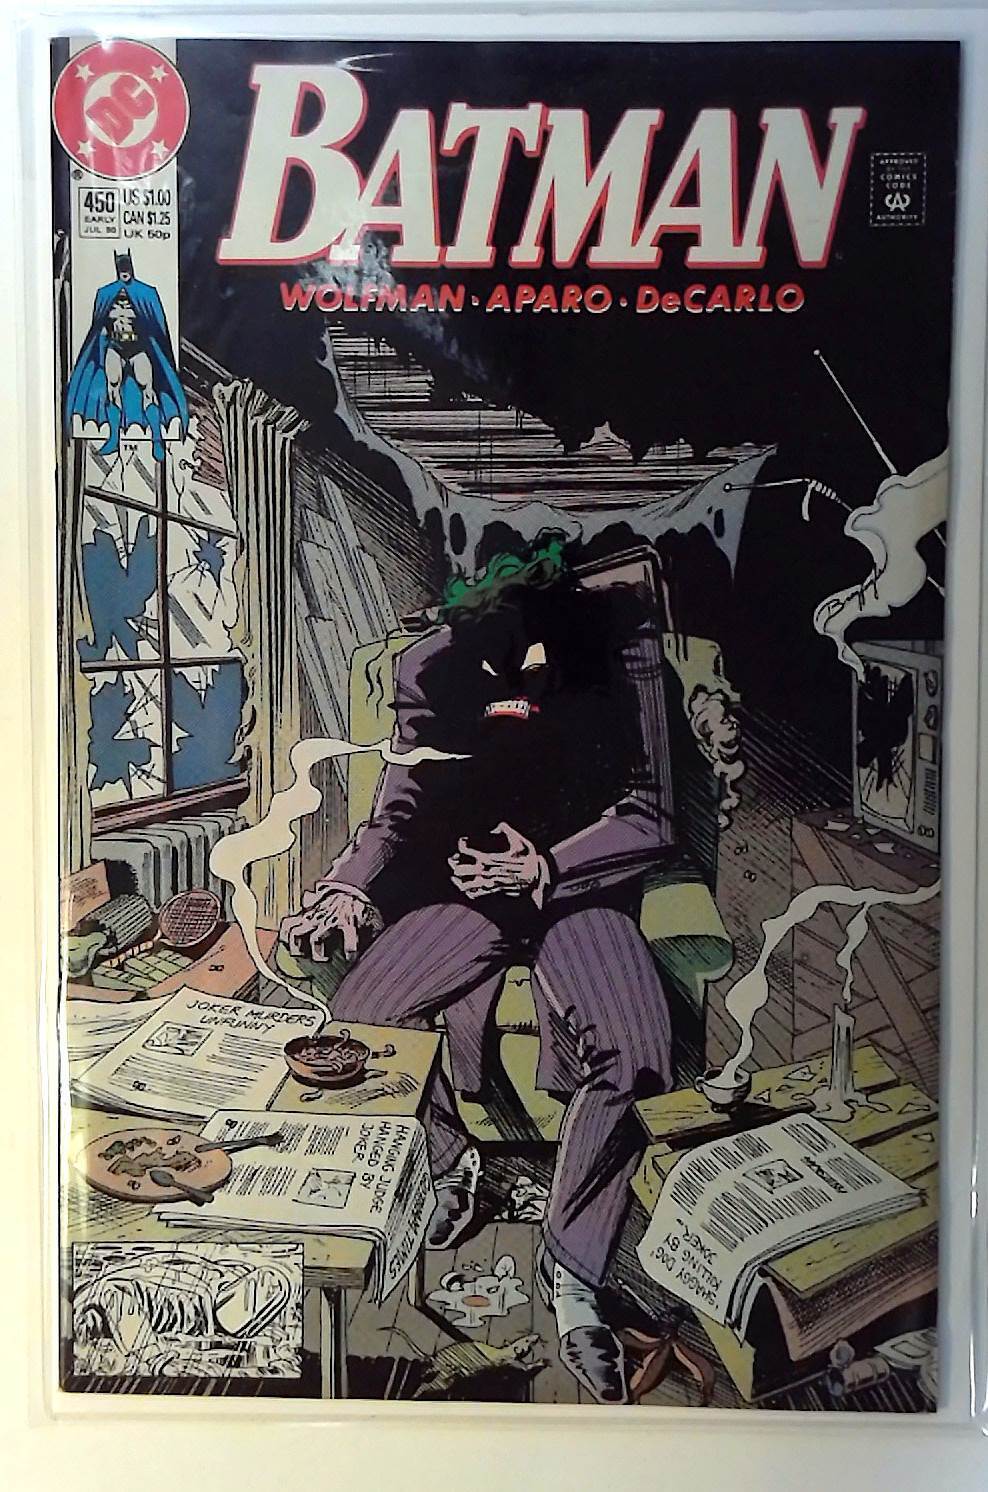 Batman #450 DC Comics (1990) VF- Joker 1st Print Comic Book